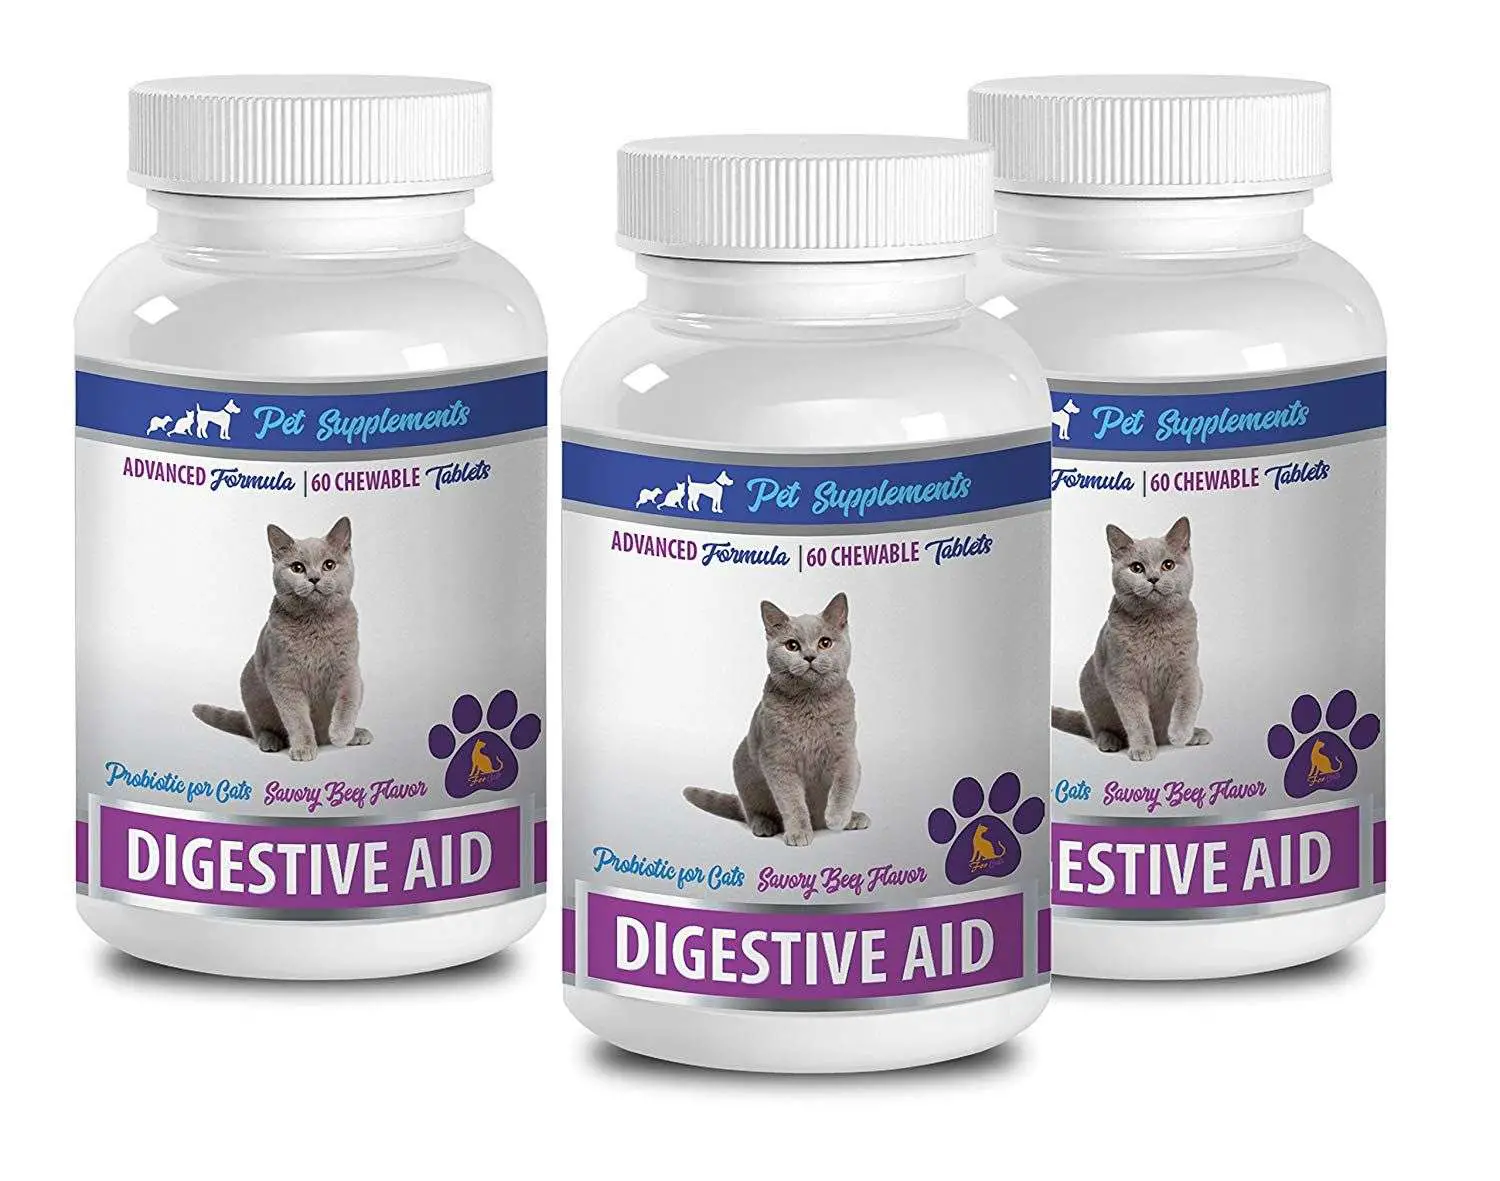 PET SUPPLEMENTS cat probiotics